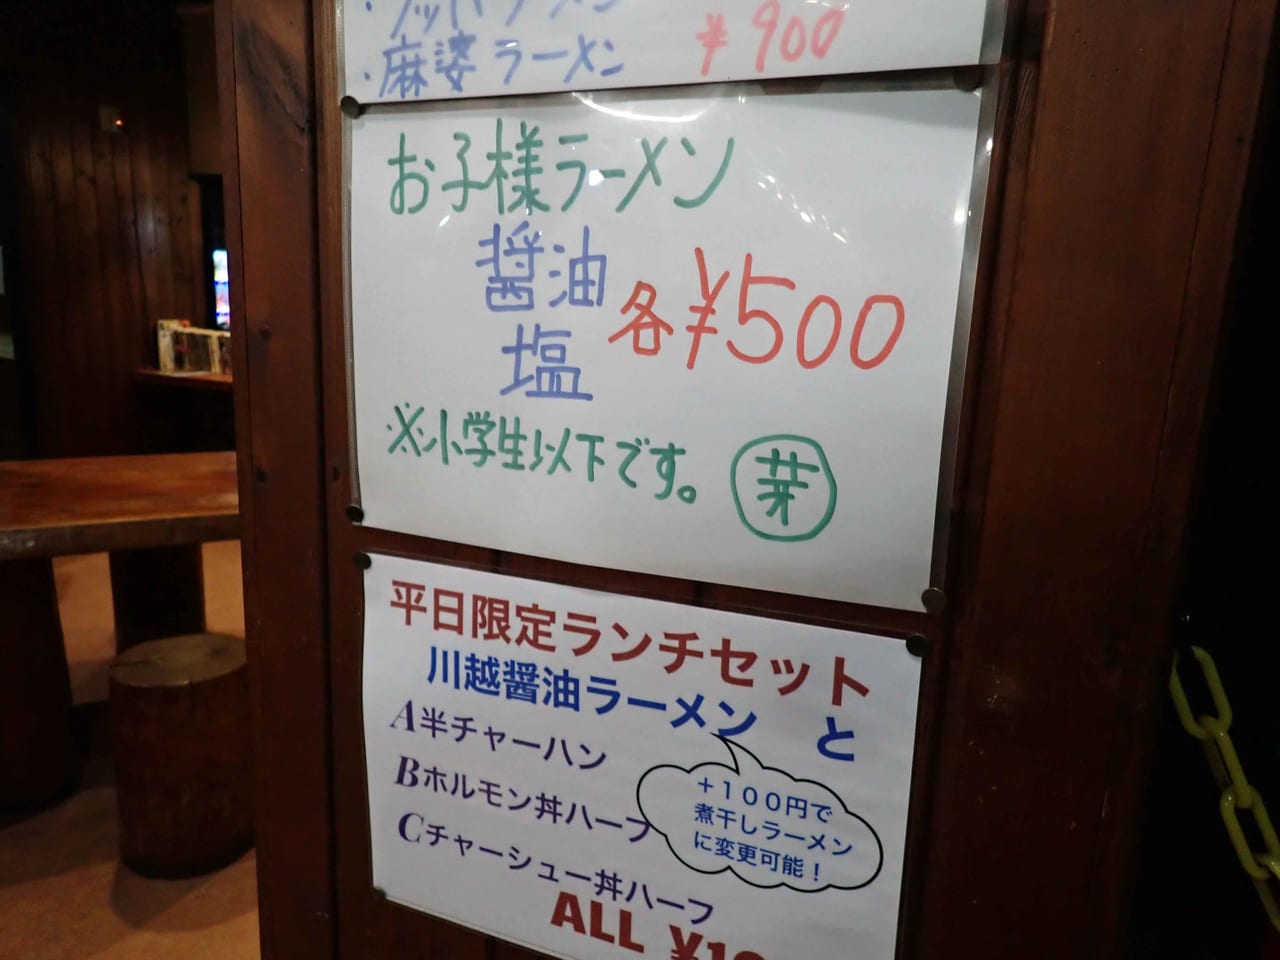 川越のラーメンの名店『麺屋芽ぶき』